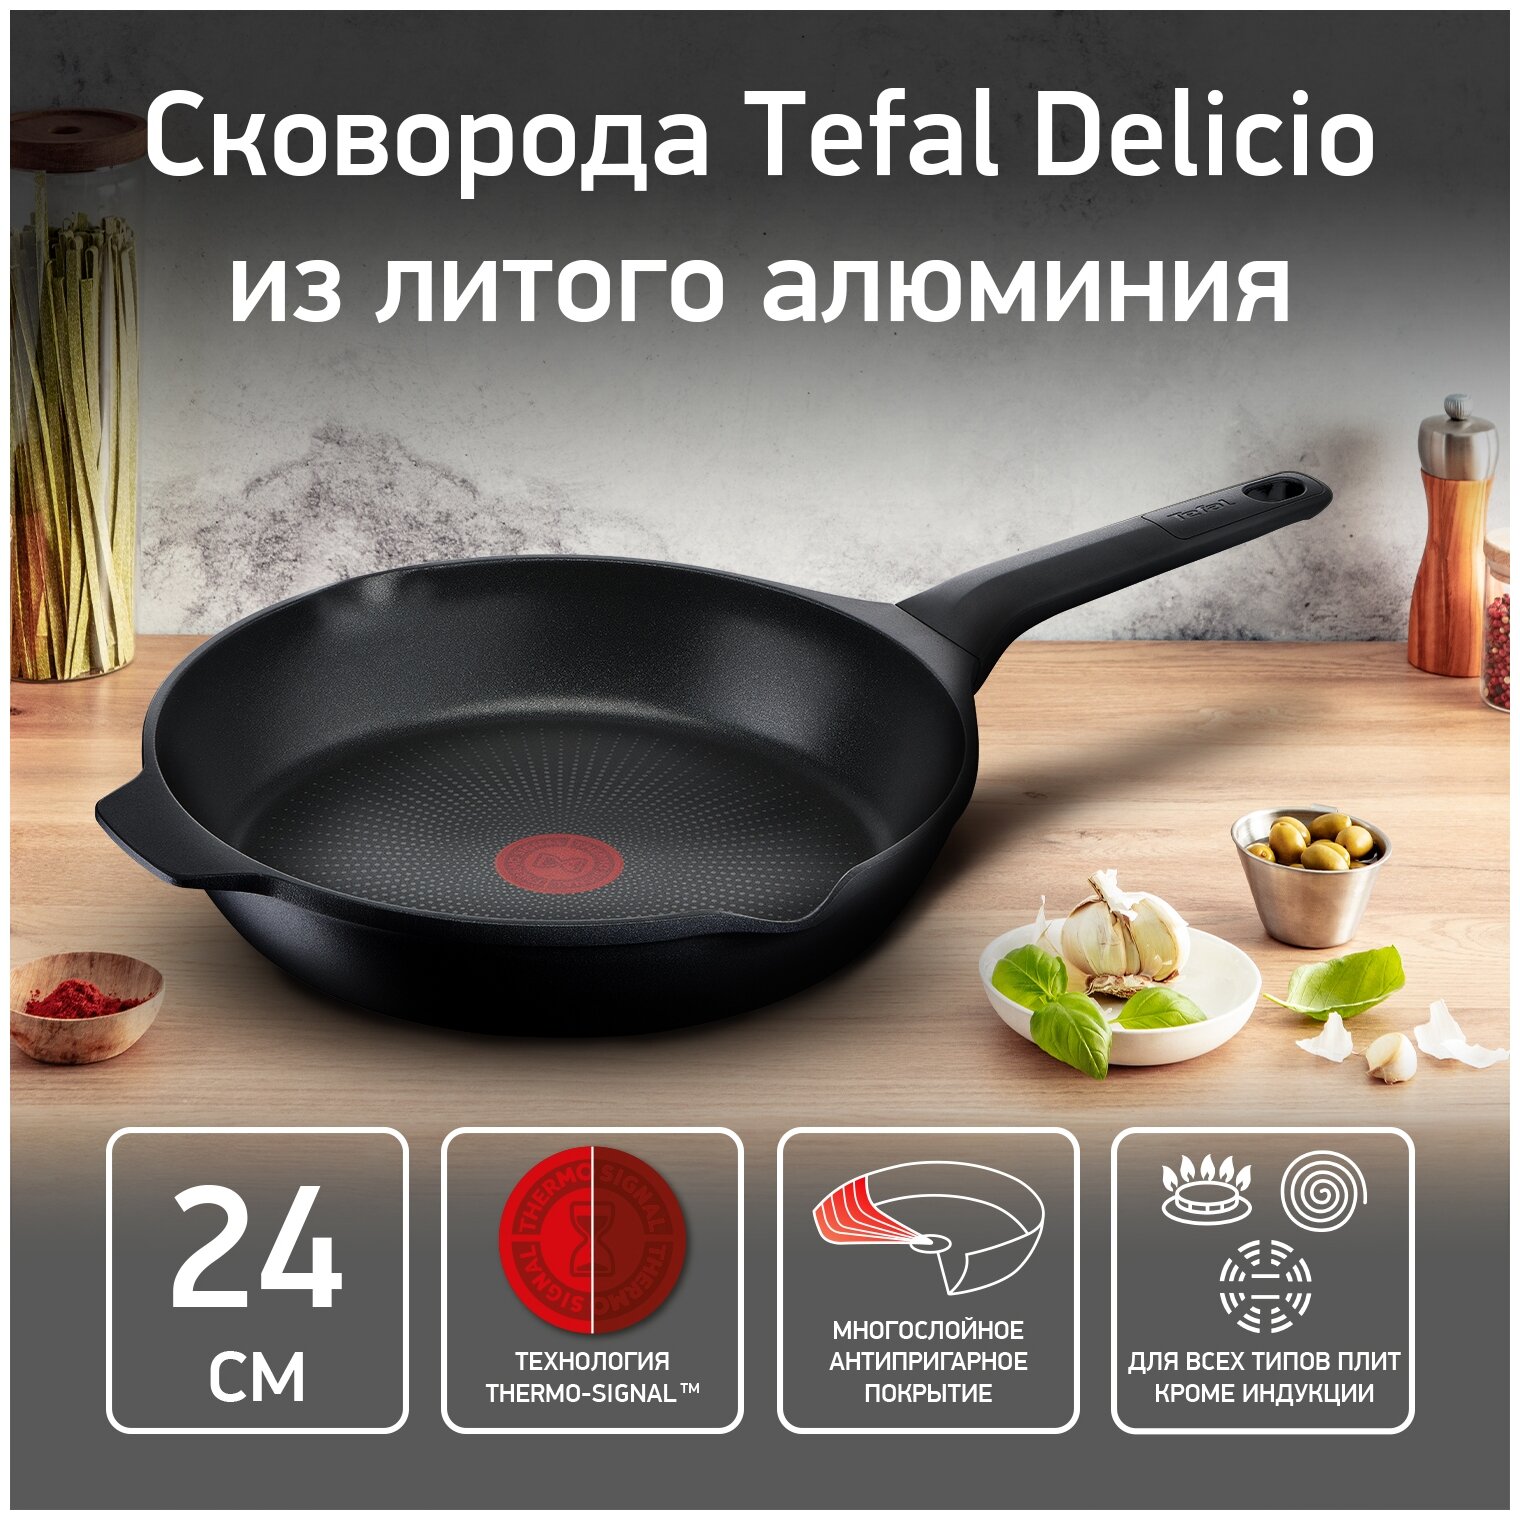 Сковорода Tefal Delicio, диаметр 24 см, E2320474